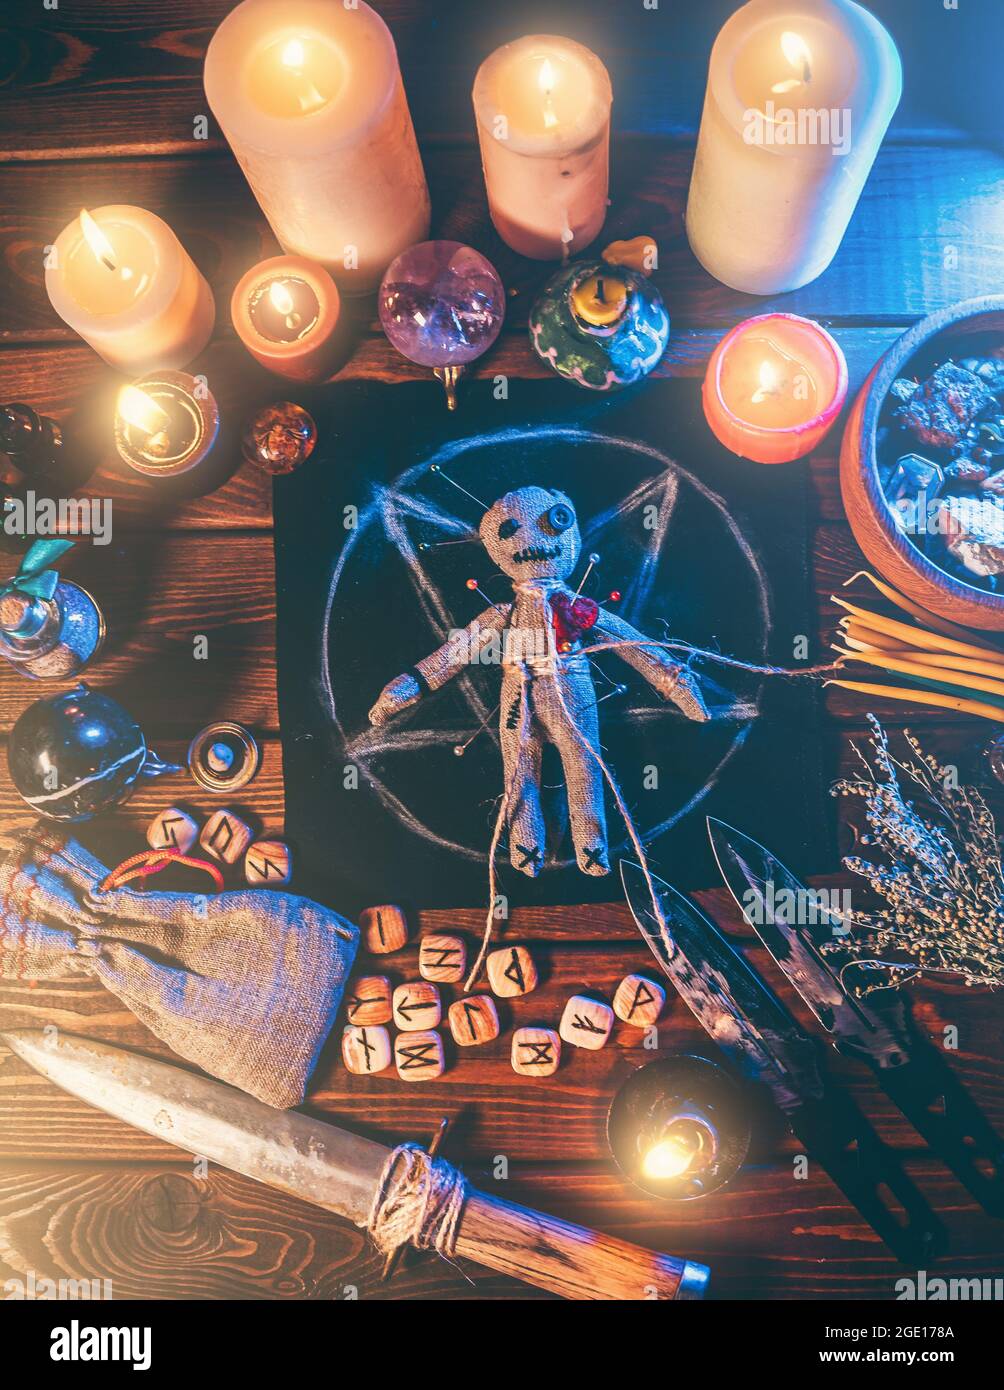 Voodoo-Puppe mit Nadeln in der Mitte des magischen Tisches mit Kerzen und okkulten Objekten Draufsicht besetzt. Magisches und düsteres gruseliges Ritual. Vergeltung oder Rache durch Hexerei-Konzept. Stockfoto